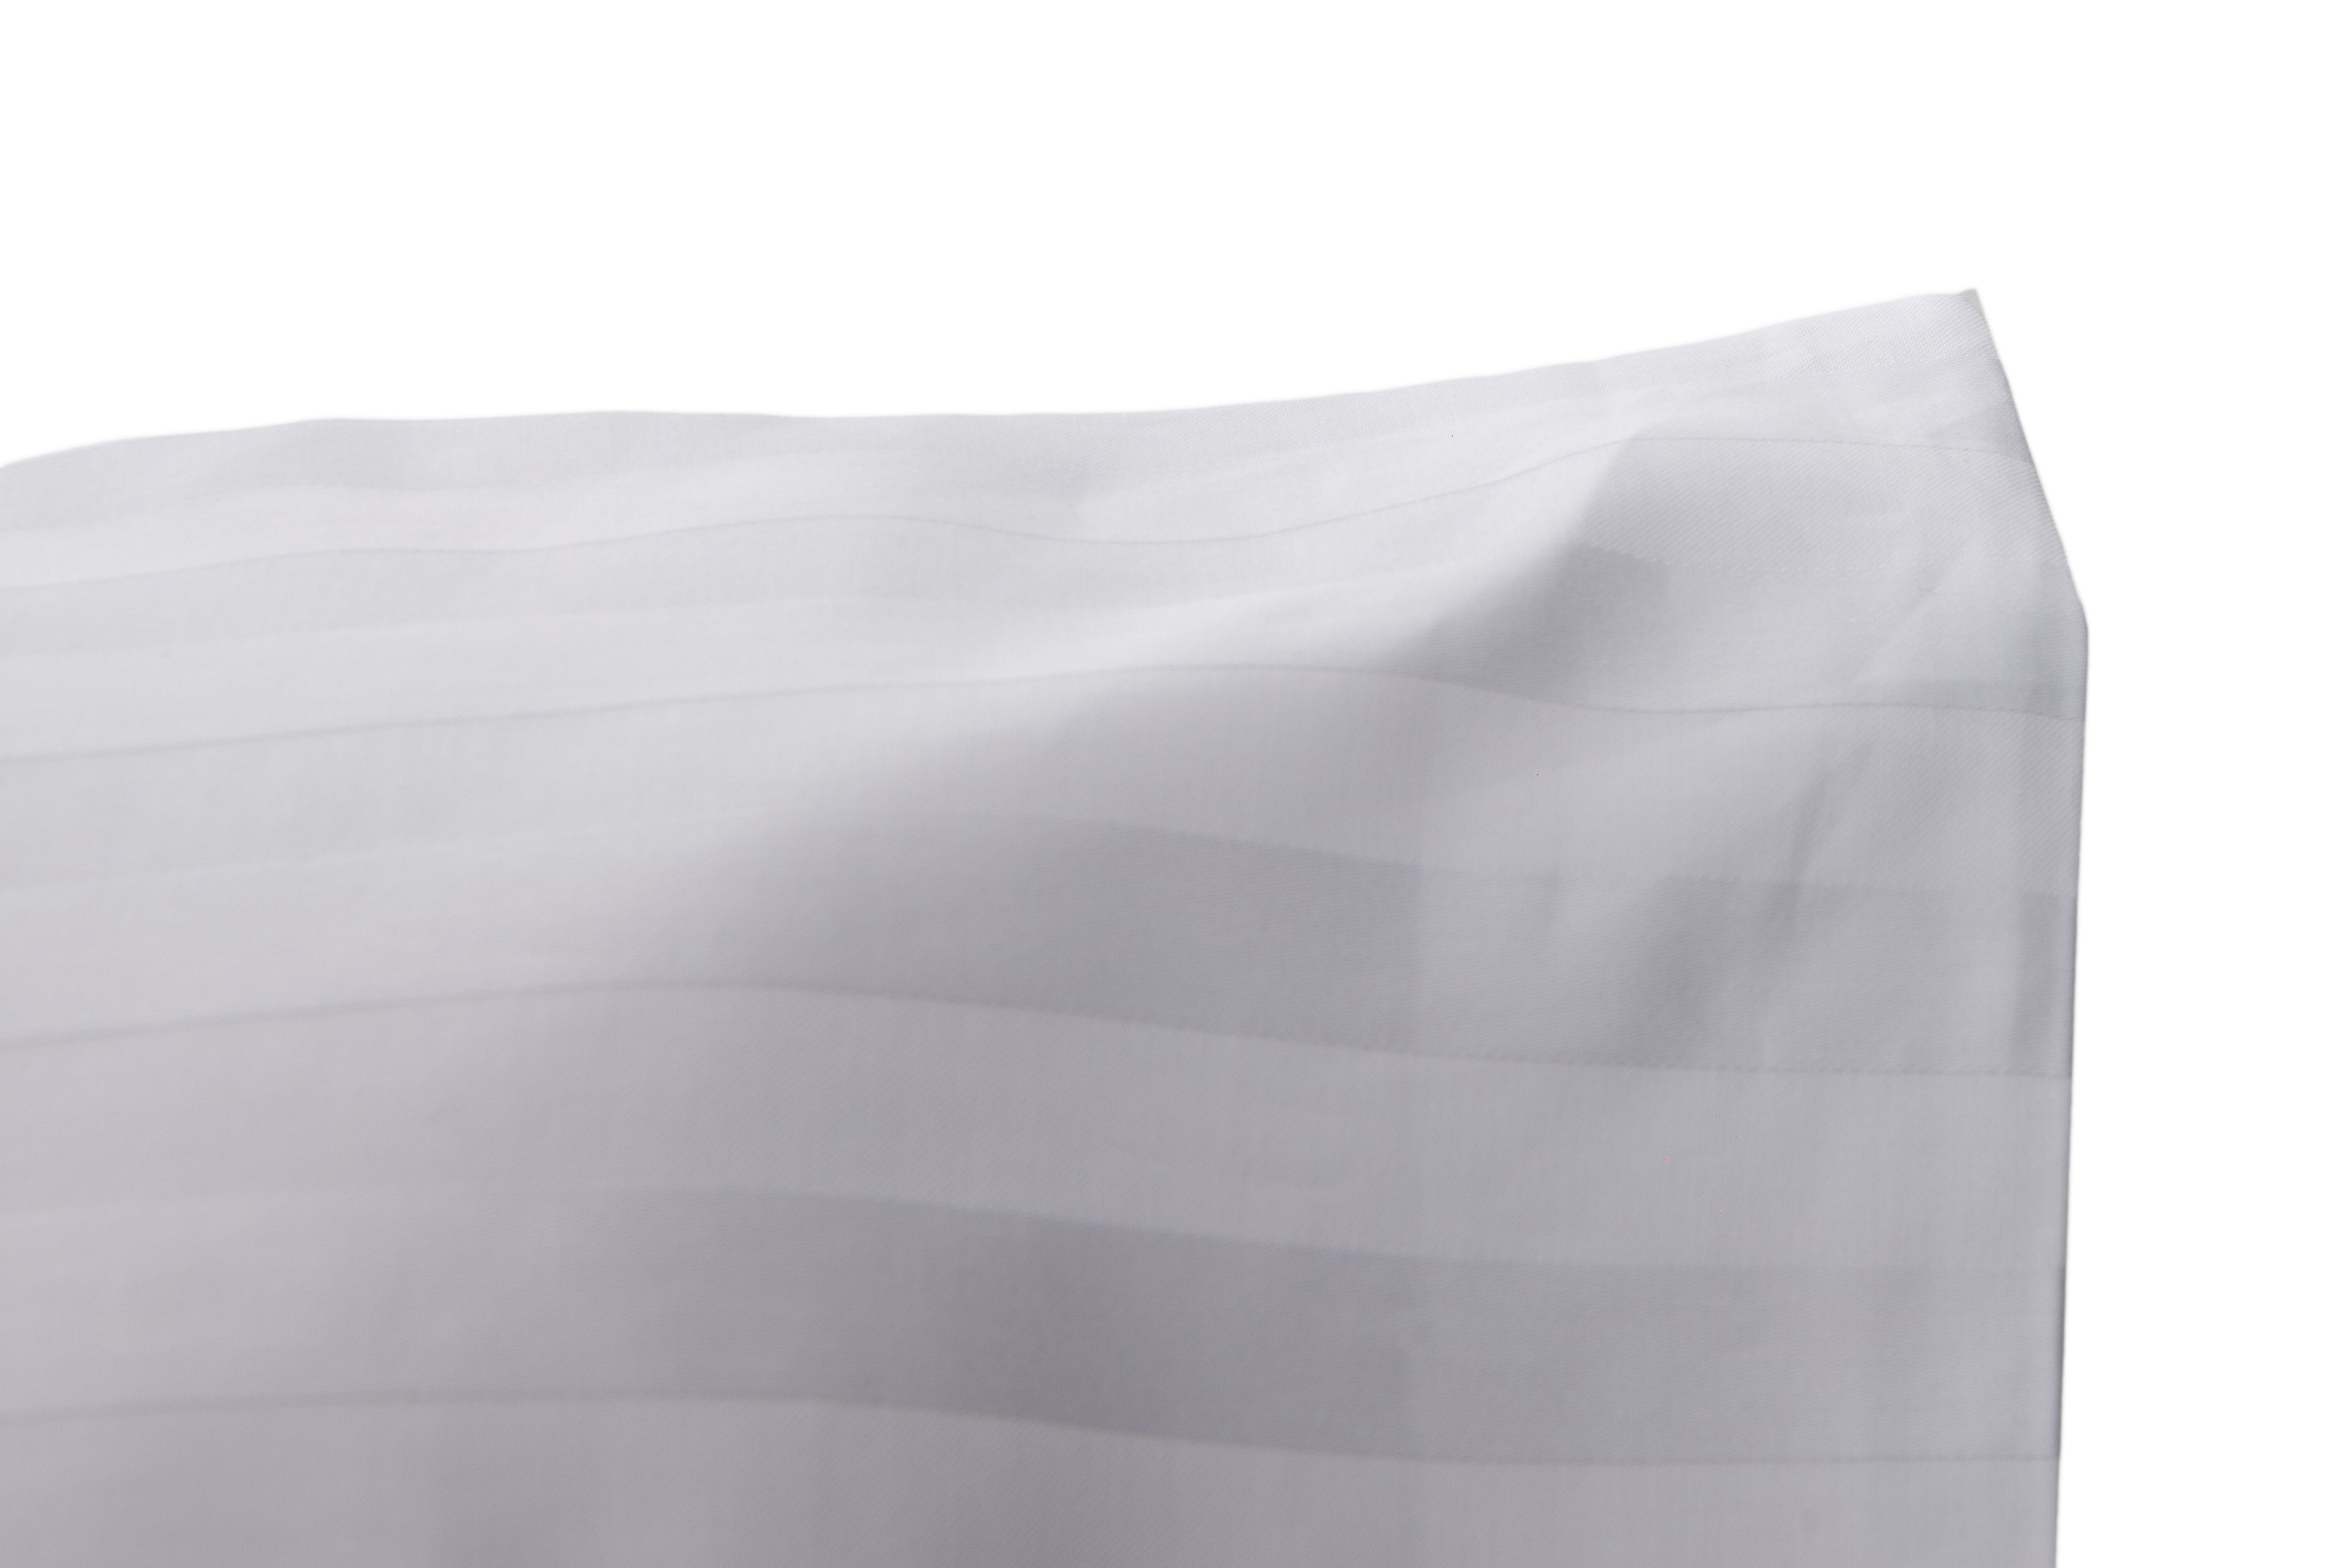 Completo letto lenzuola raso spigato rigato BIANCO - Vanita di raso